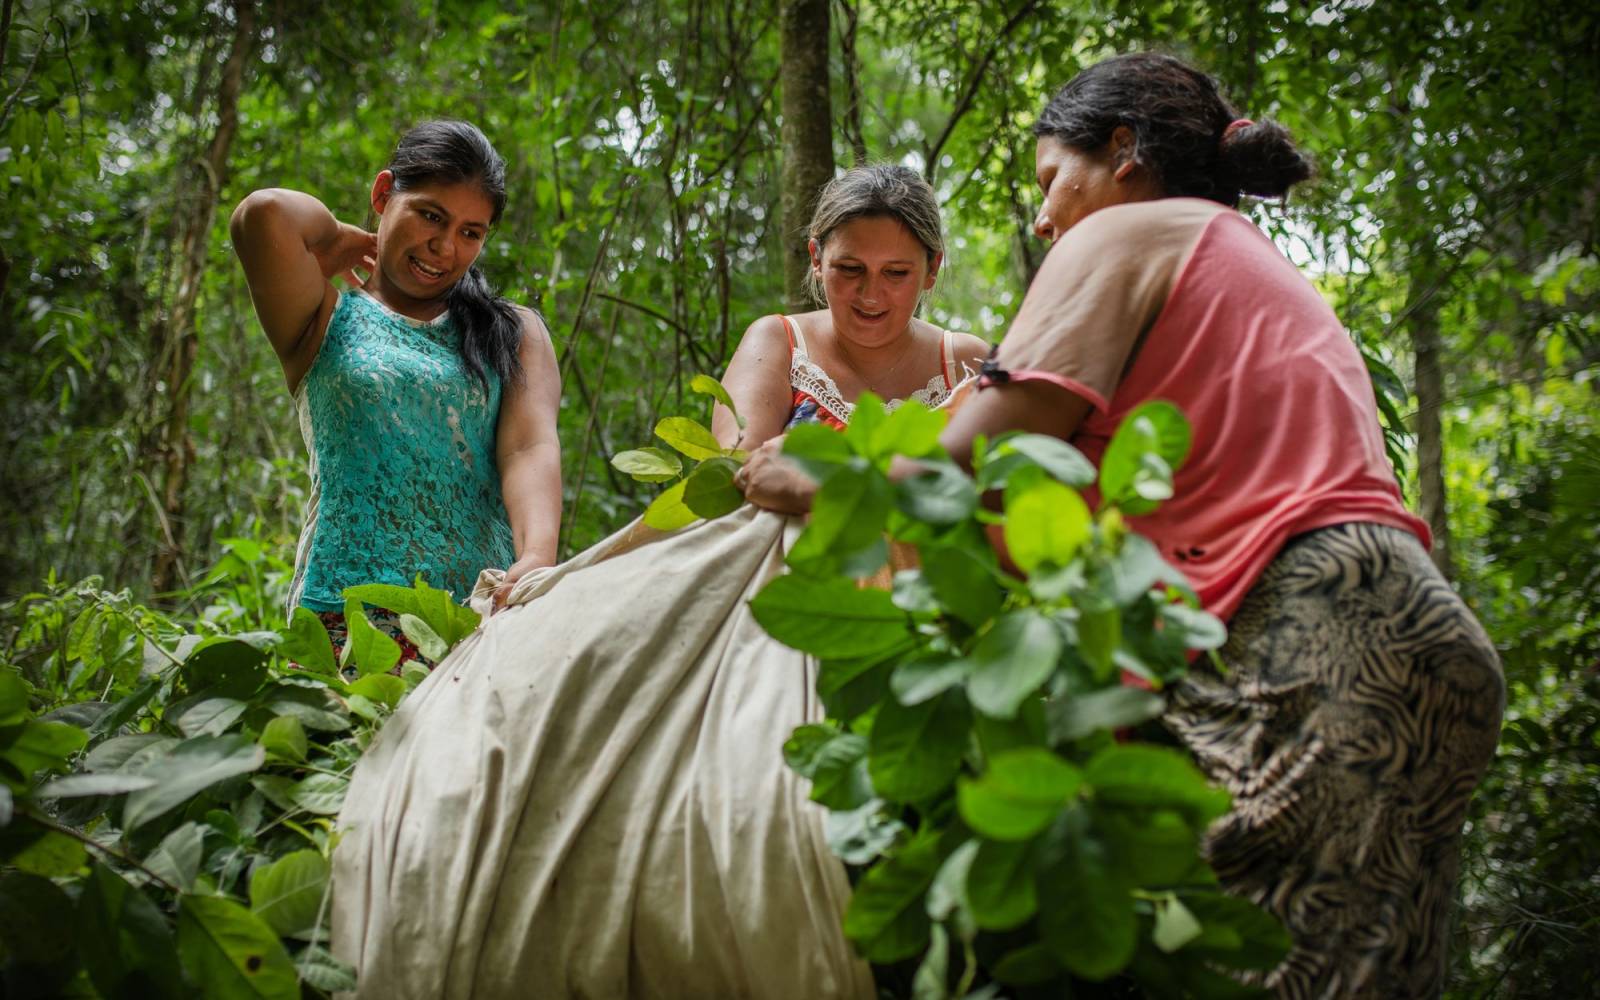 Frauen-Cooperative bei der Mate-Ernte in Paraguay